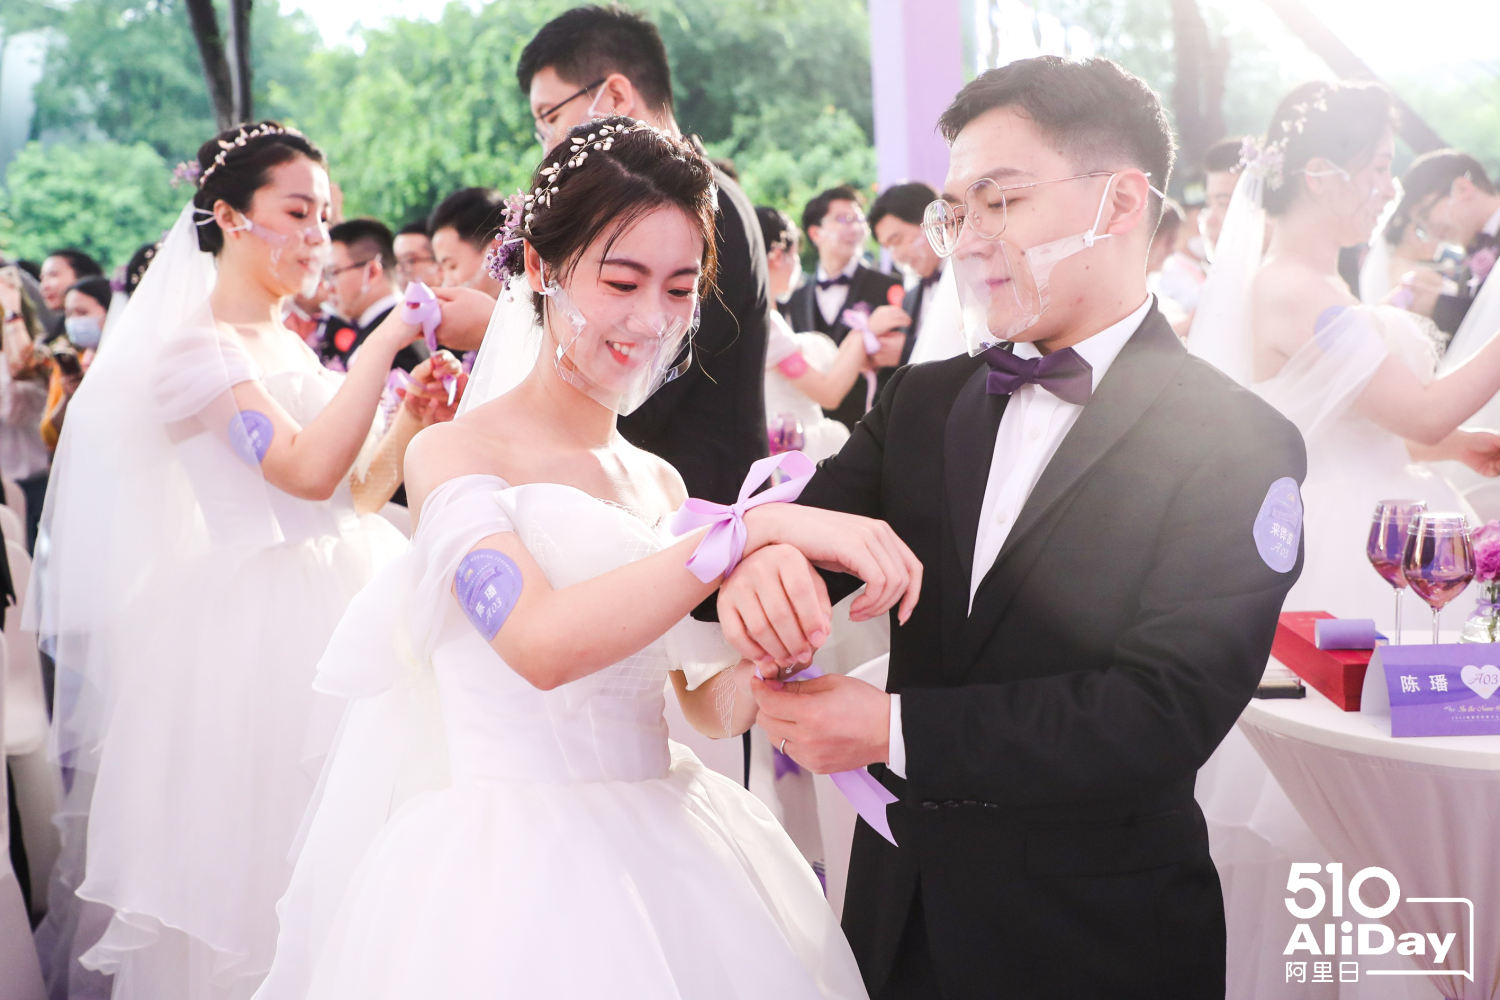 ebanyak 102 pasangan menikah di acara resepsi pernikahan Alibaba Group yang diselenggarakan di kantor pusat Alibaba Group di Hangzhou.